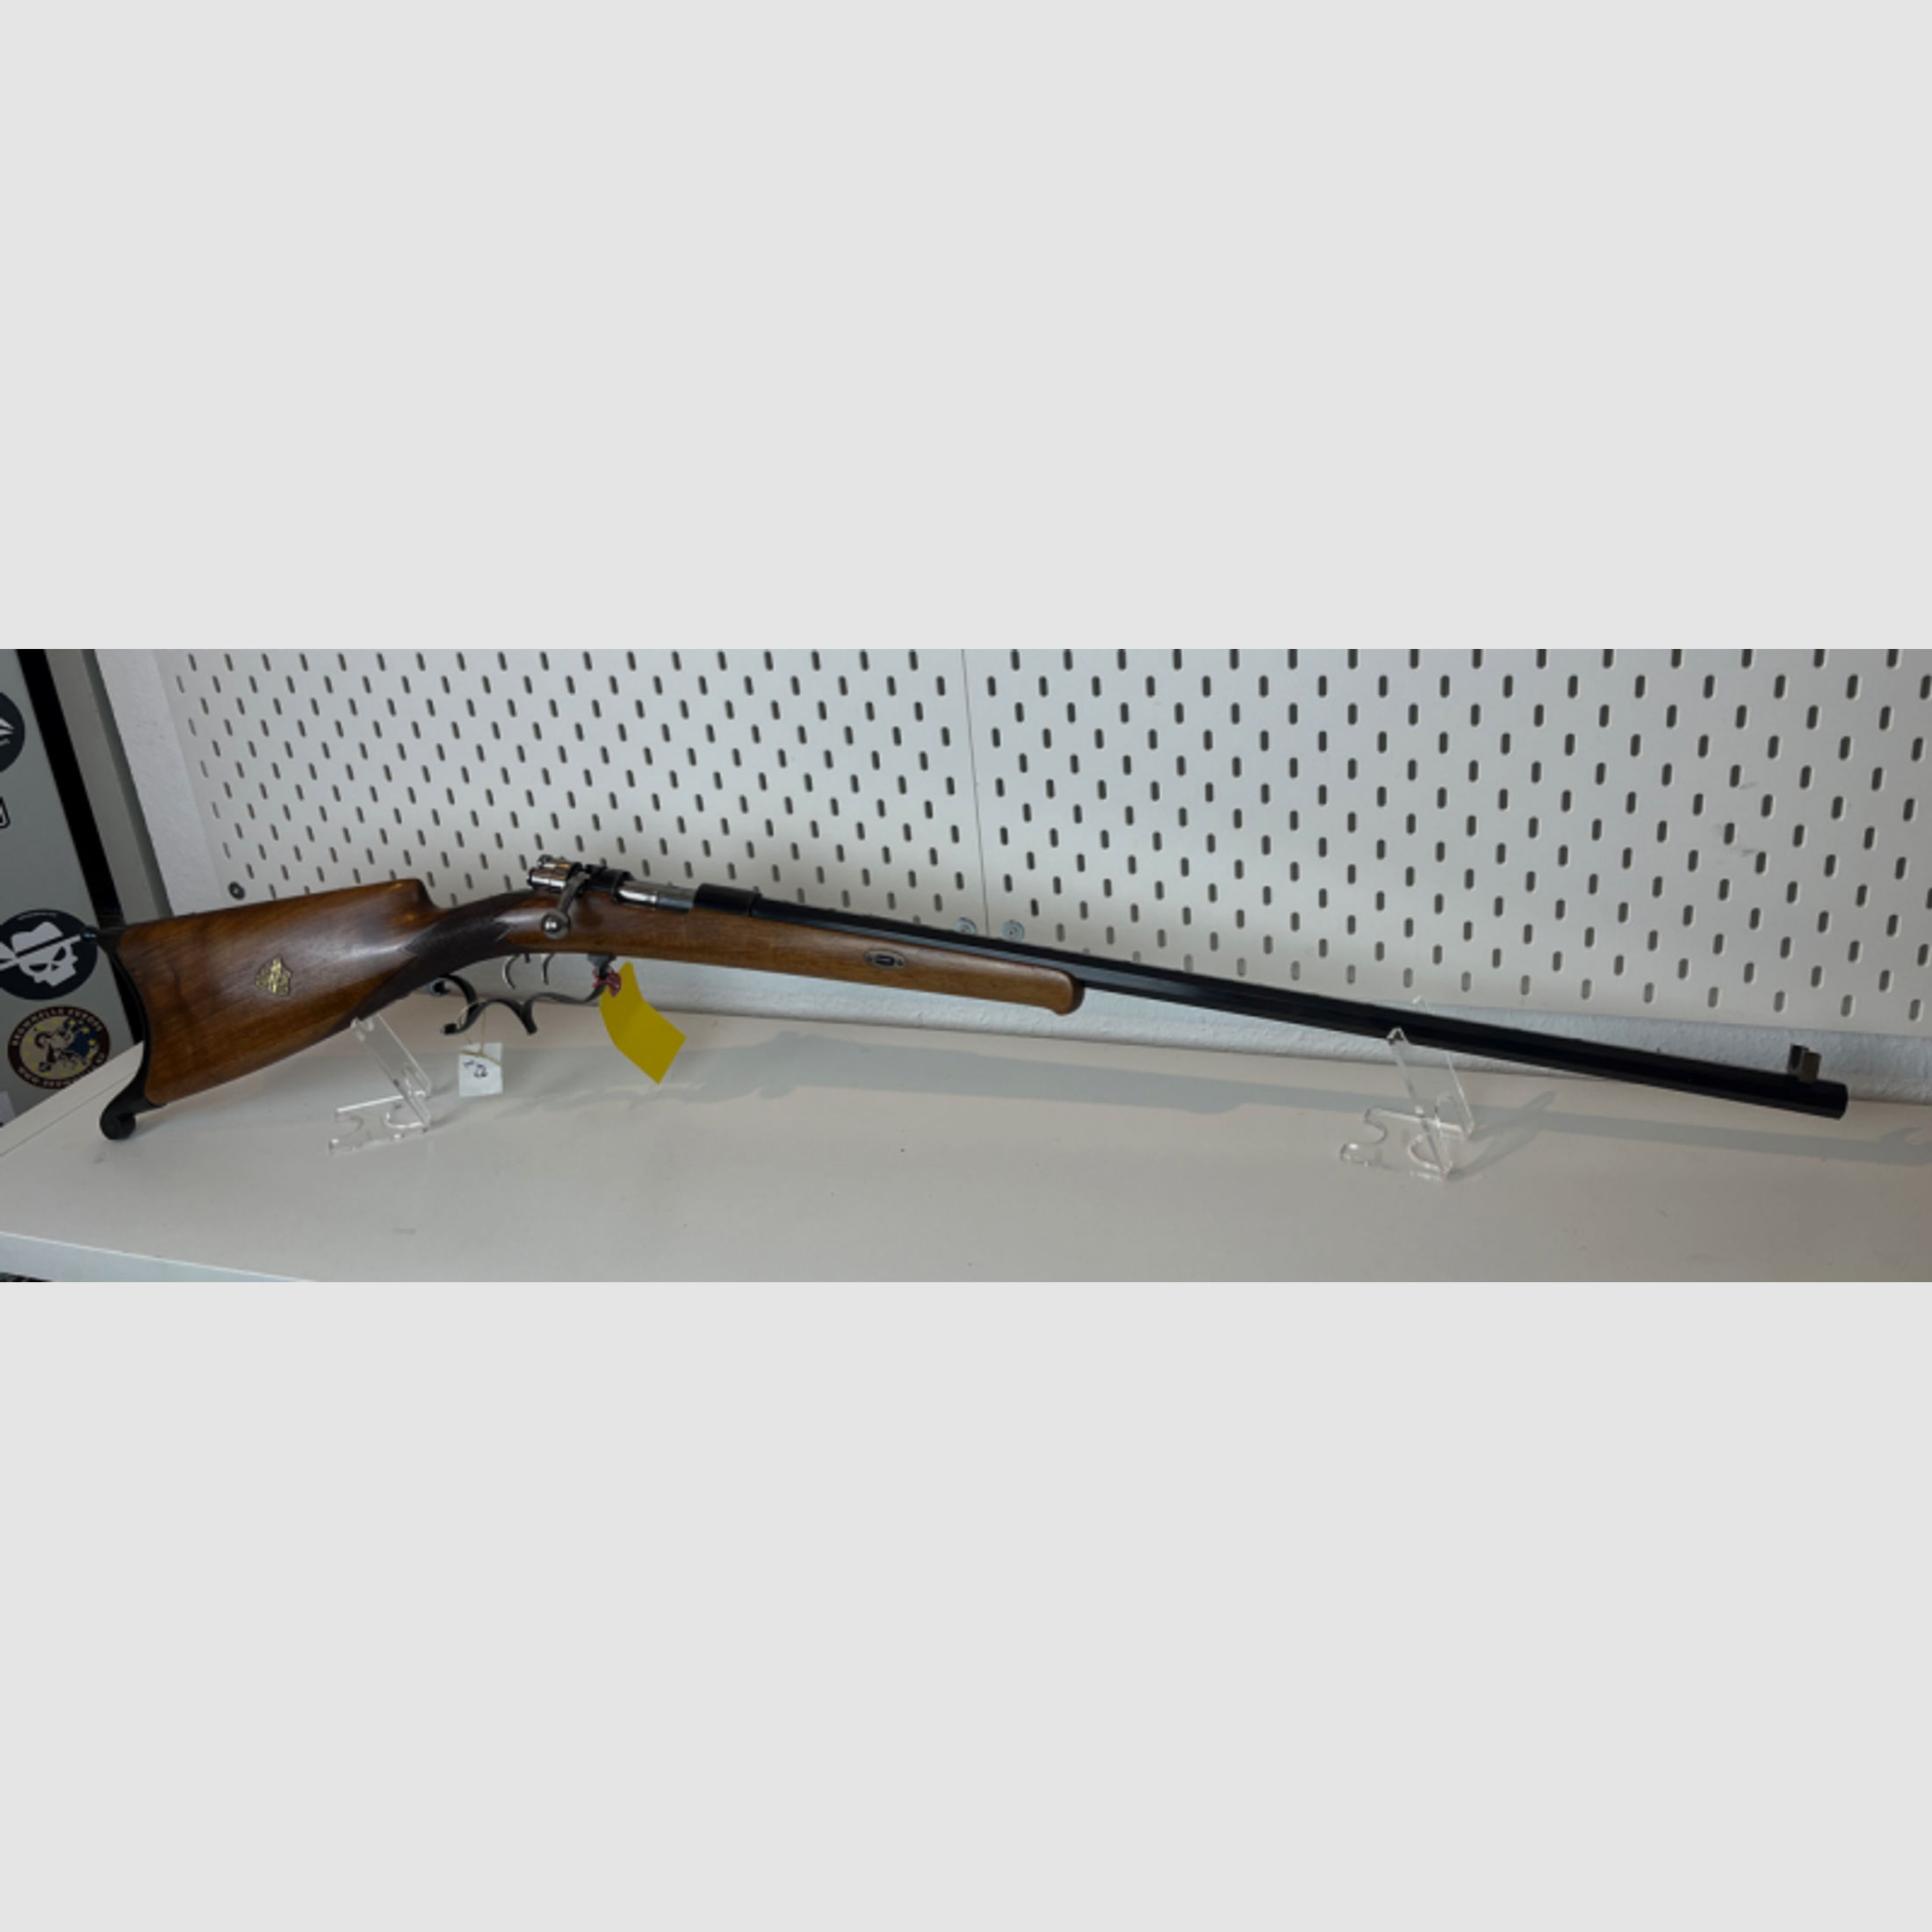 unbekannte Mauser Repetierbüchse Vorkrieg, Target Rifle im Kal. 8,15x46 R, A. Mauser Seriennummer 6